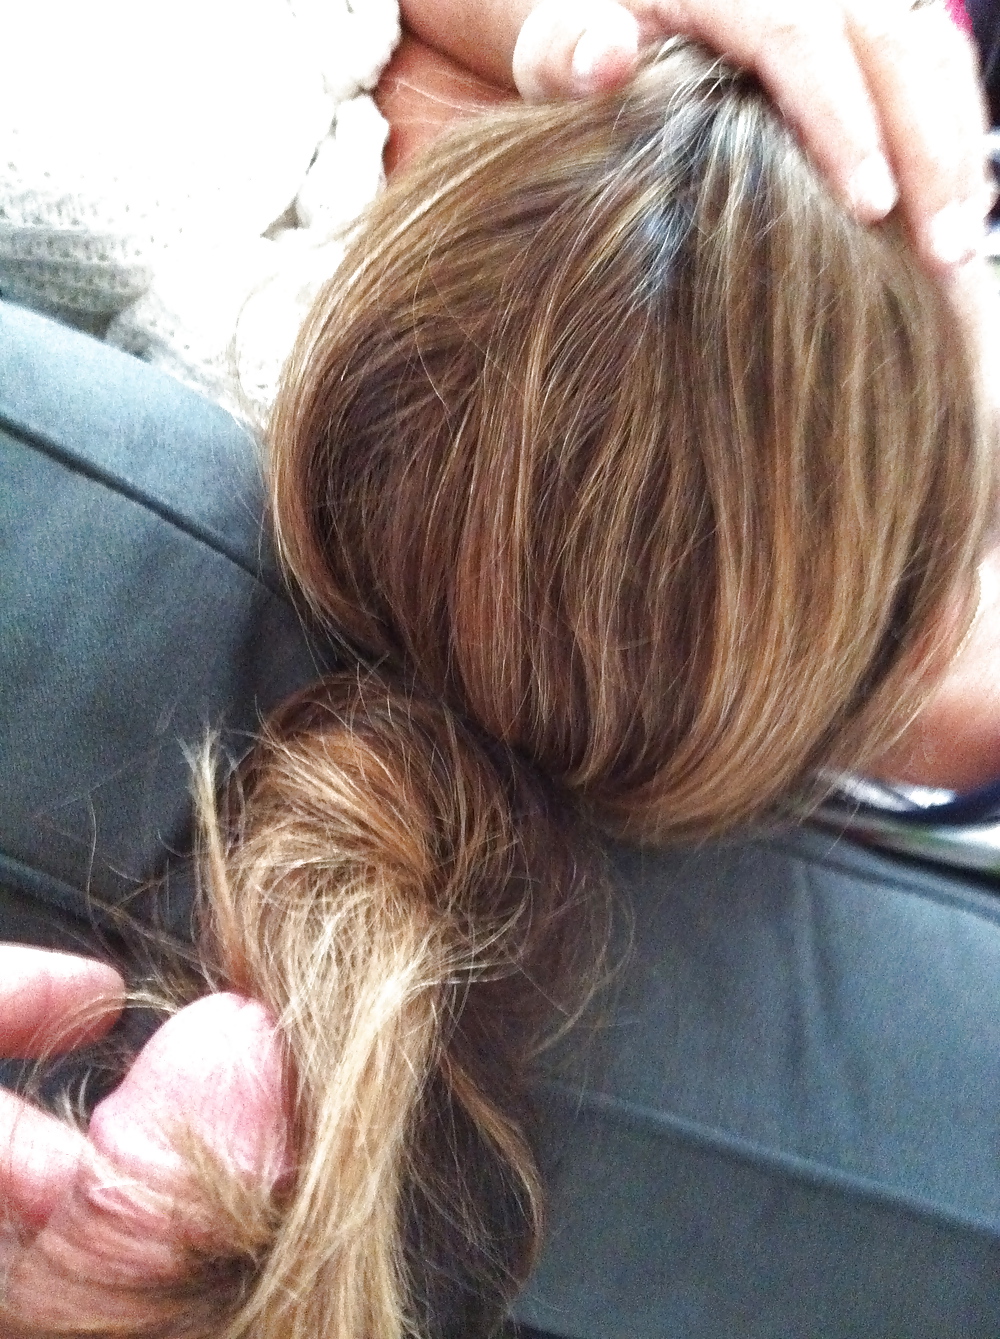 Michelle's F'n sexy hair... #6912588